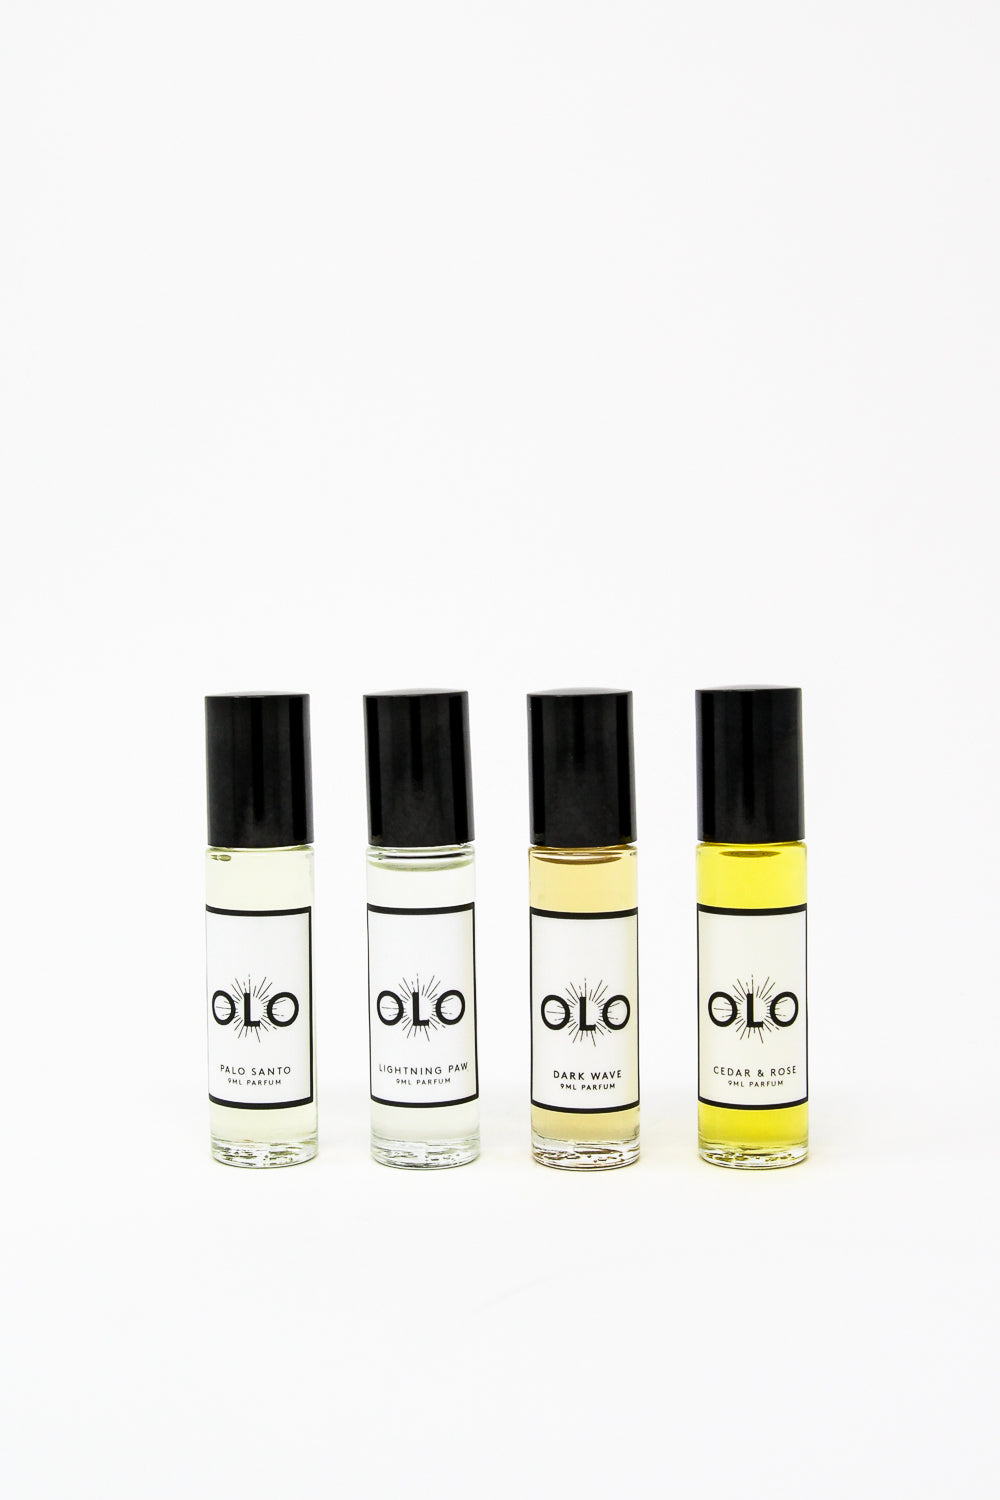  OLO Fragrance in Cedar & Rose | Oroboro Store | New York, NY